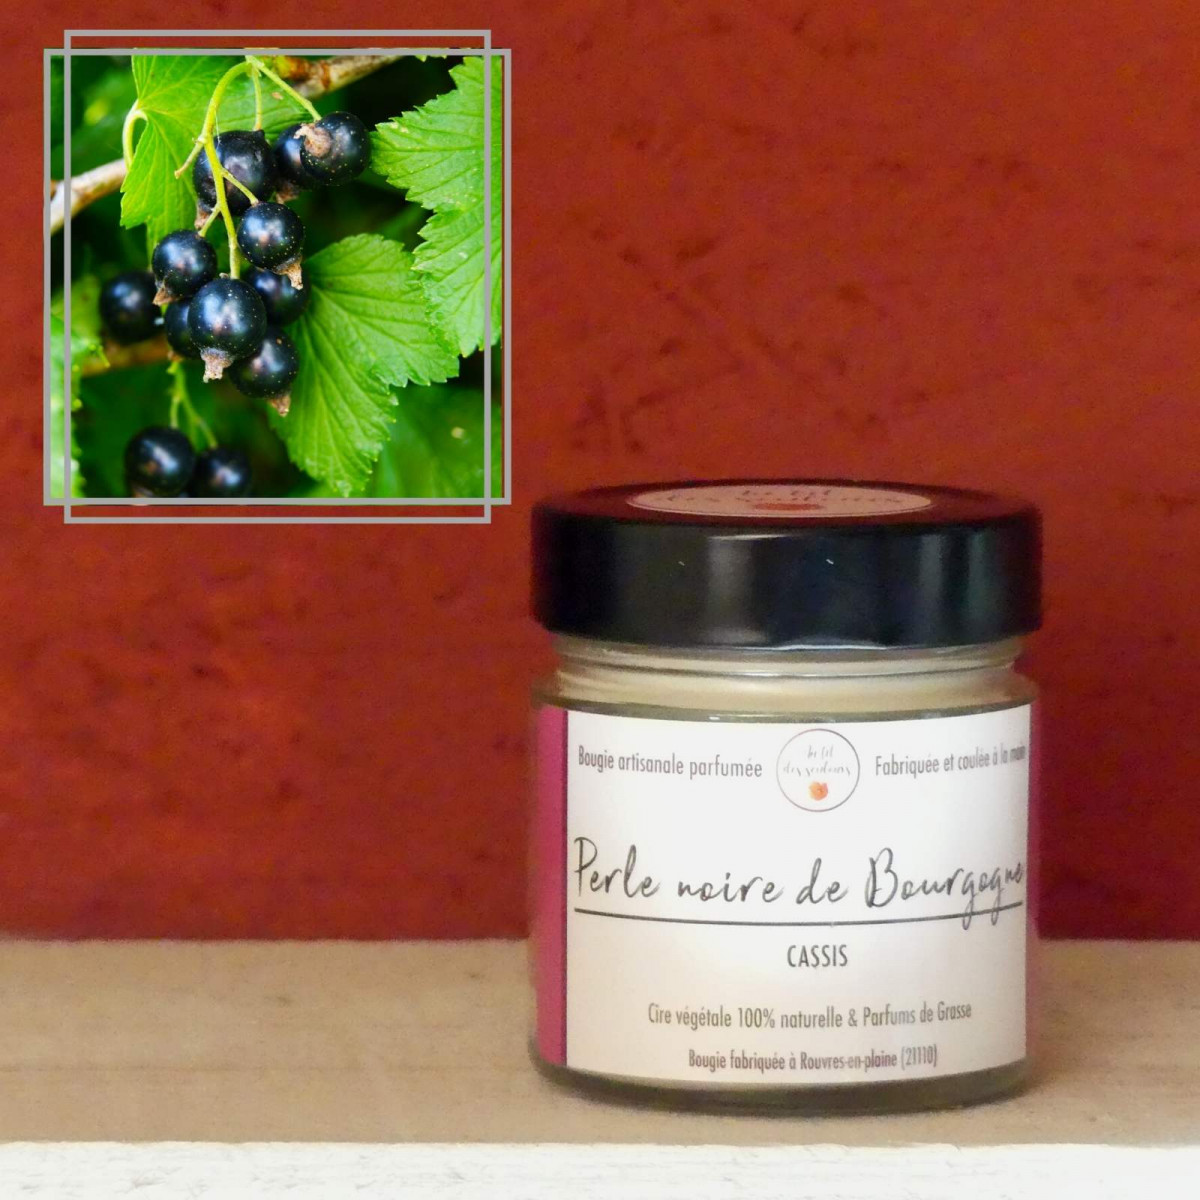 Bougie végétale parfumée Cassis (Perle noire de Bourgogne) - La Belle de  Bourgogne